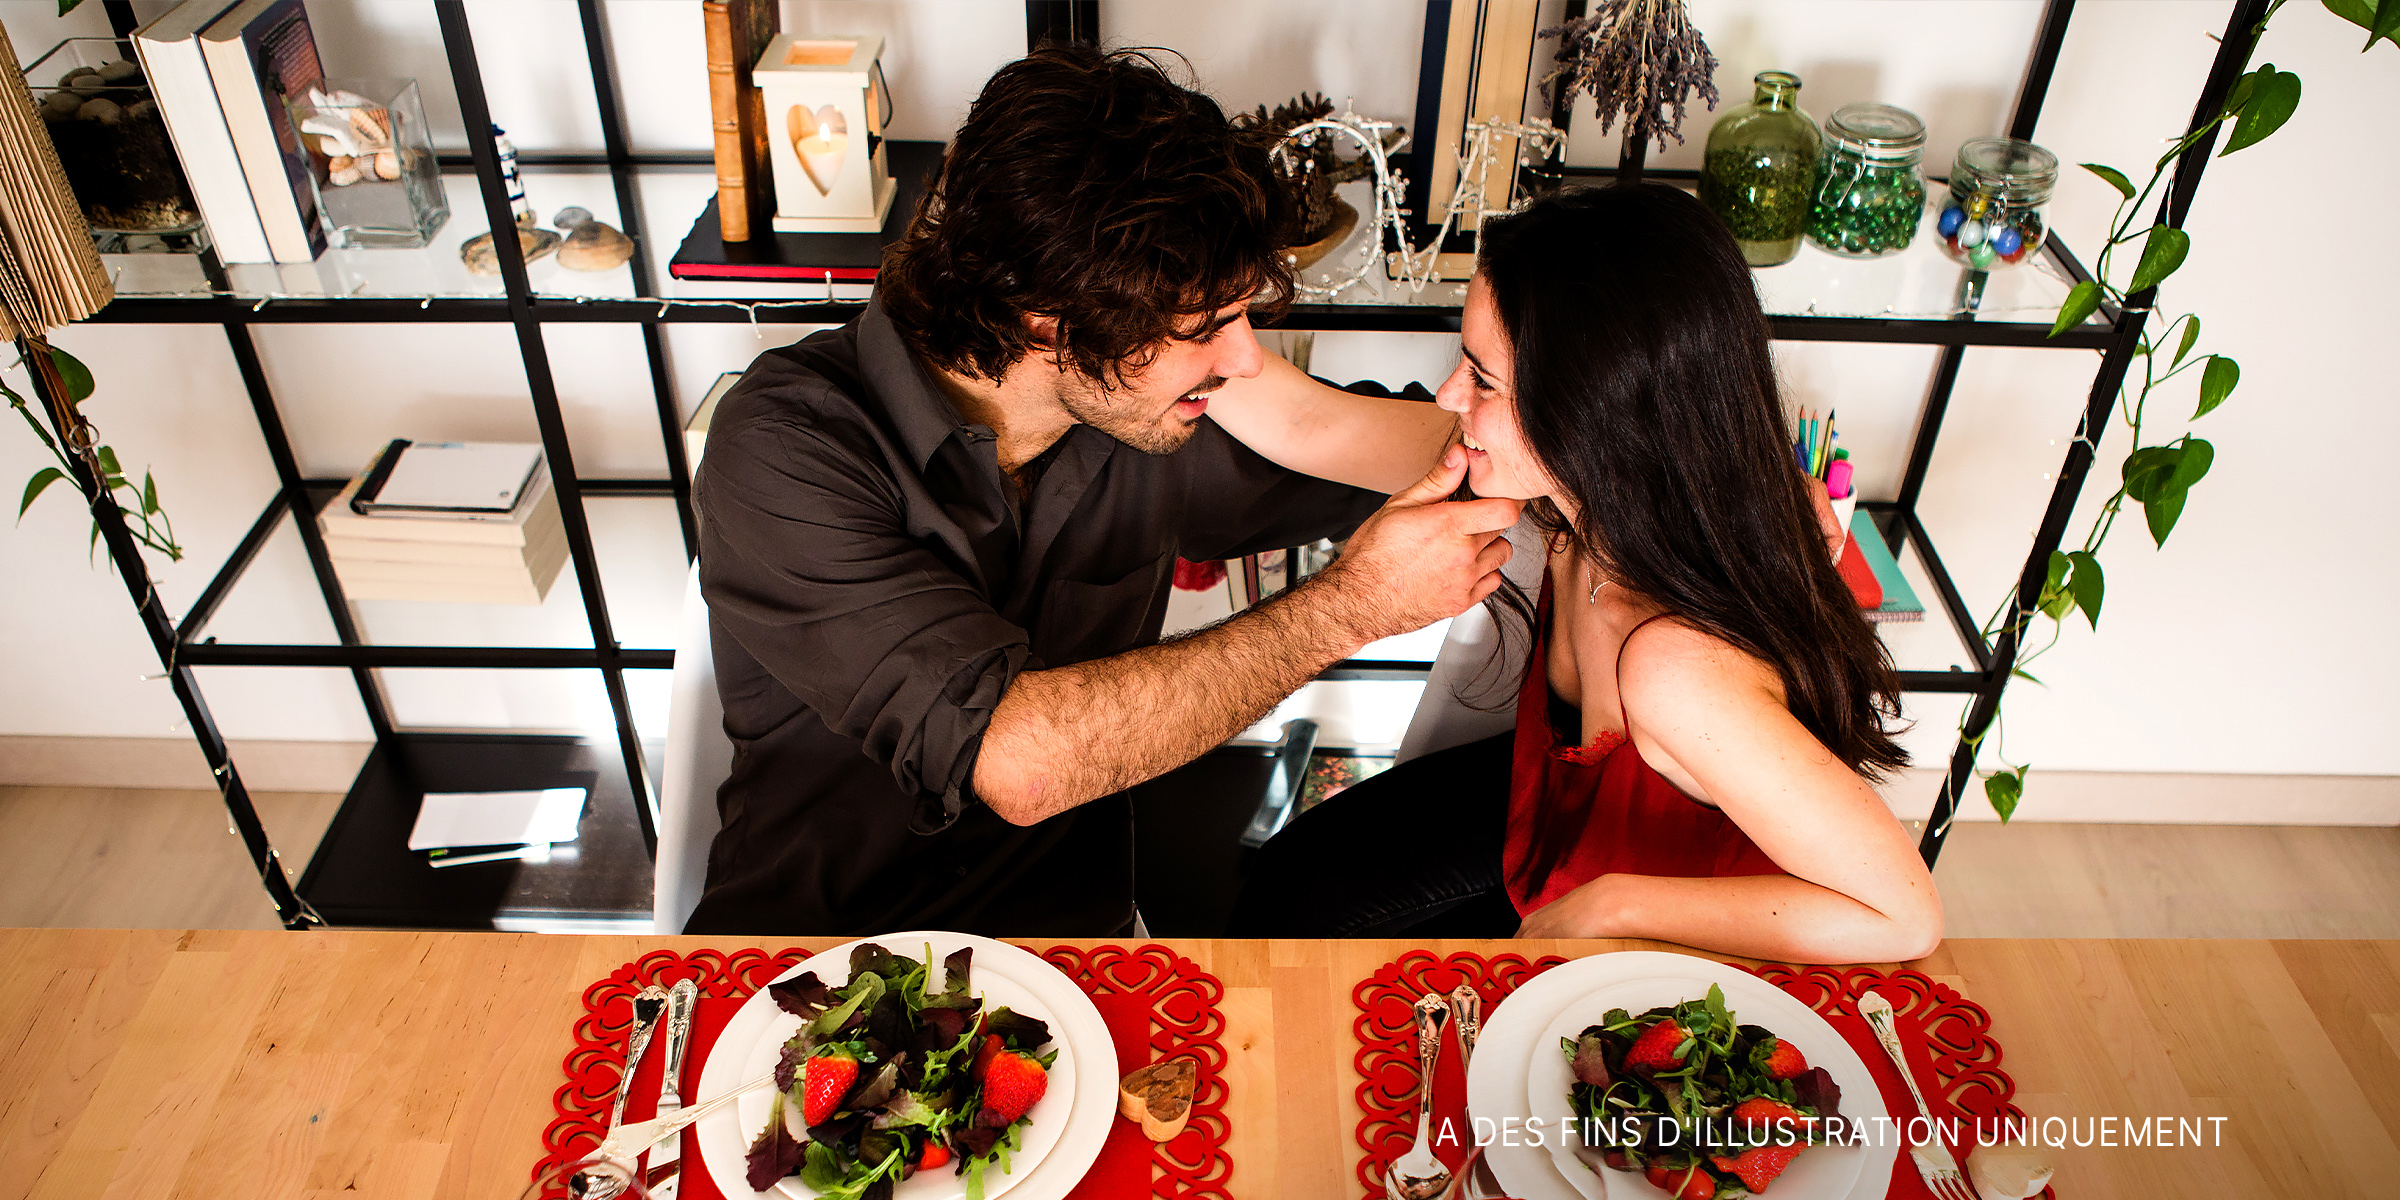 Un couple se touchant lors d'un dîner romantique | Source : Flickr.com